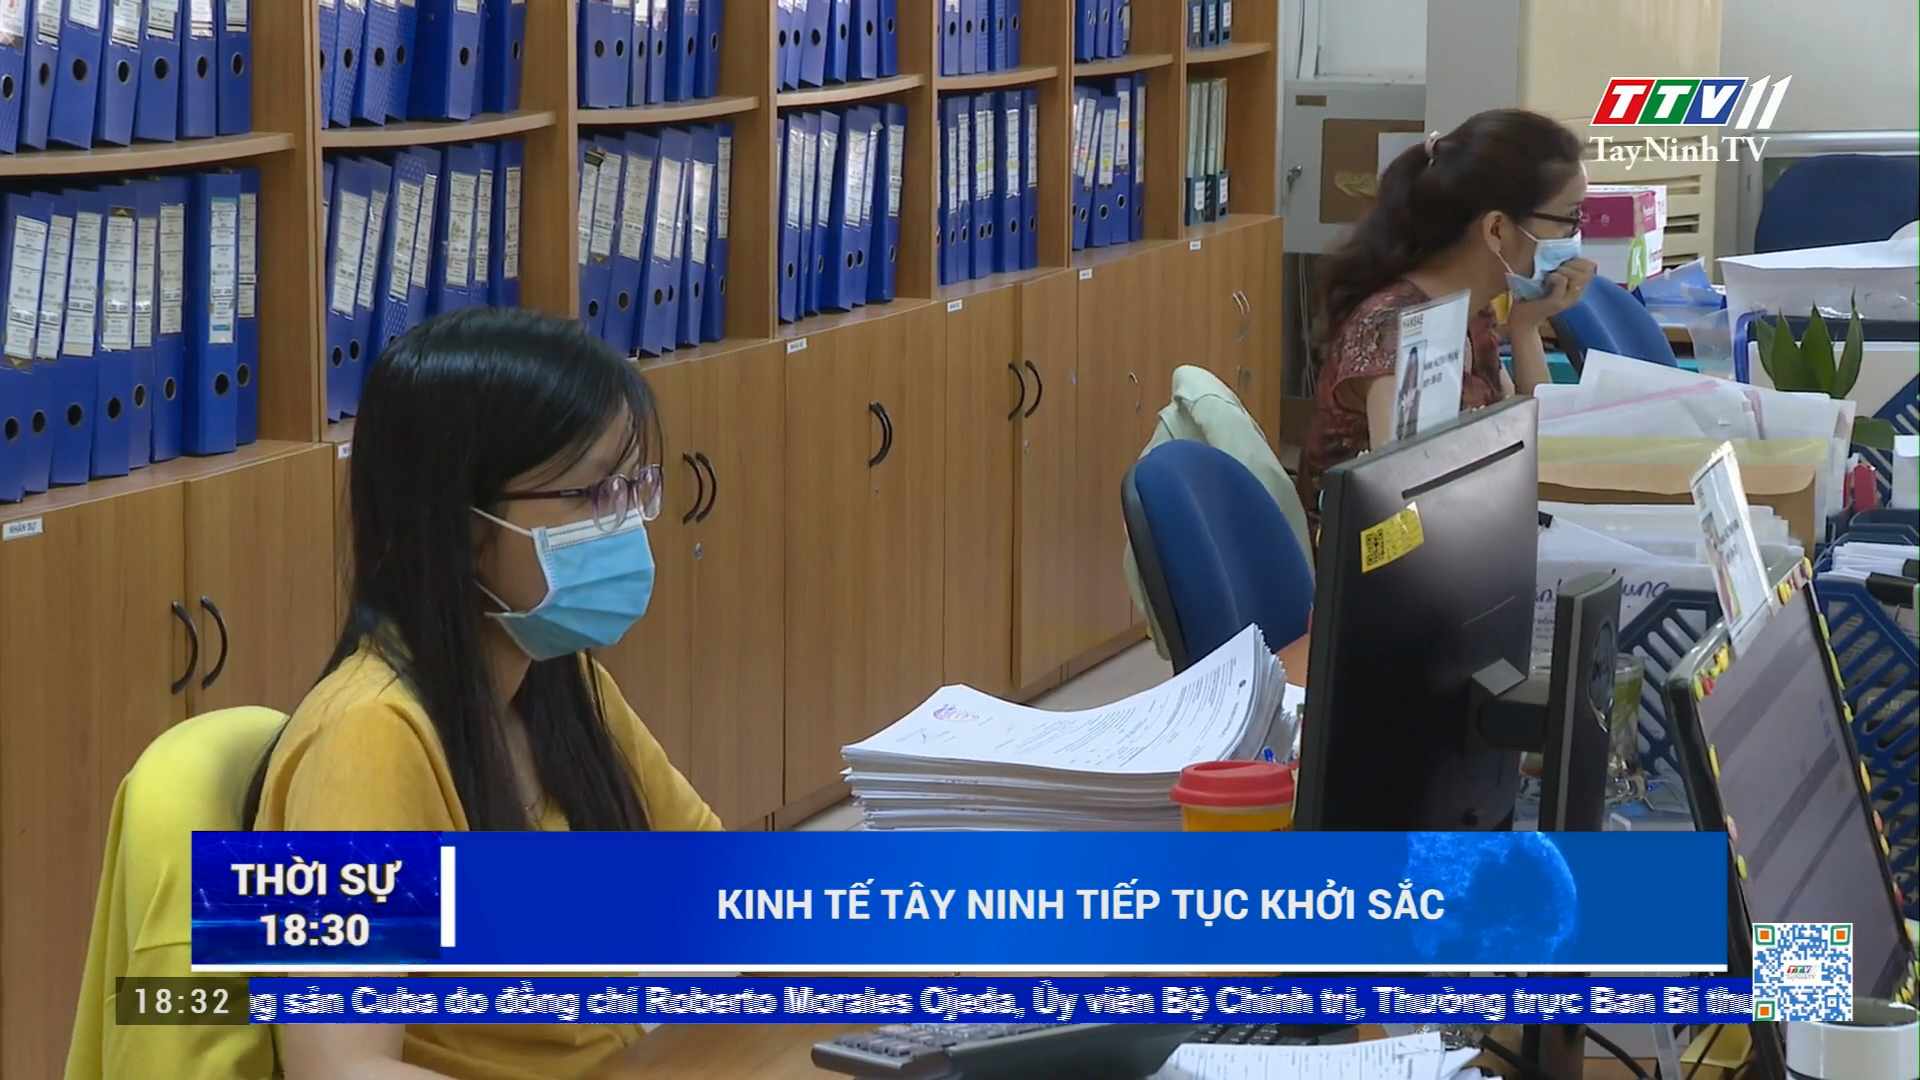 Kinh tế Tây Ninh tiếp tục khởi sắc | TayNinhTV